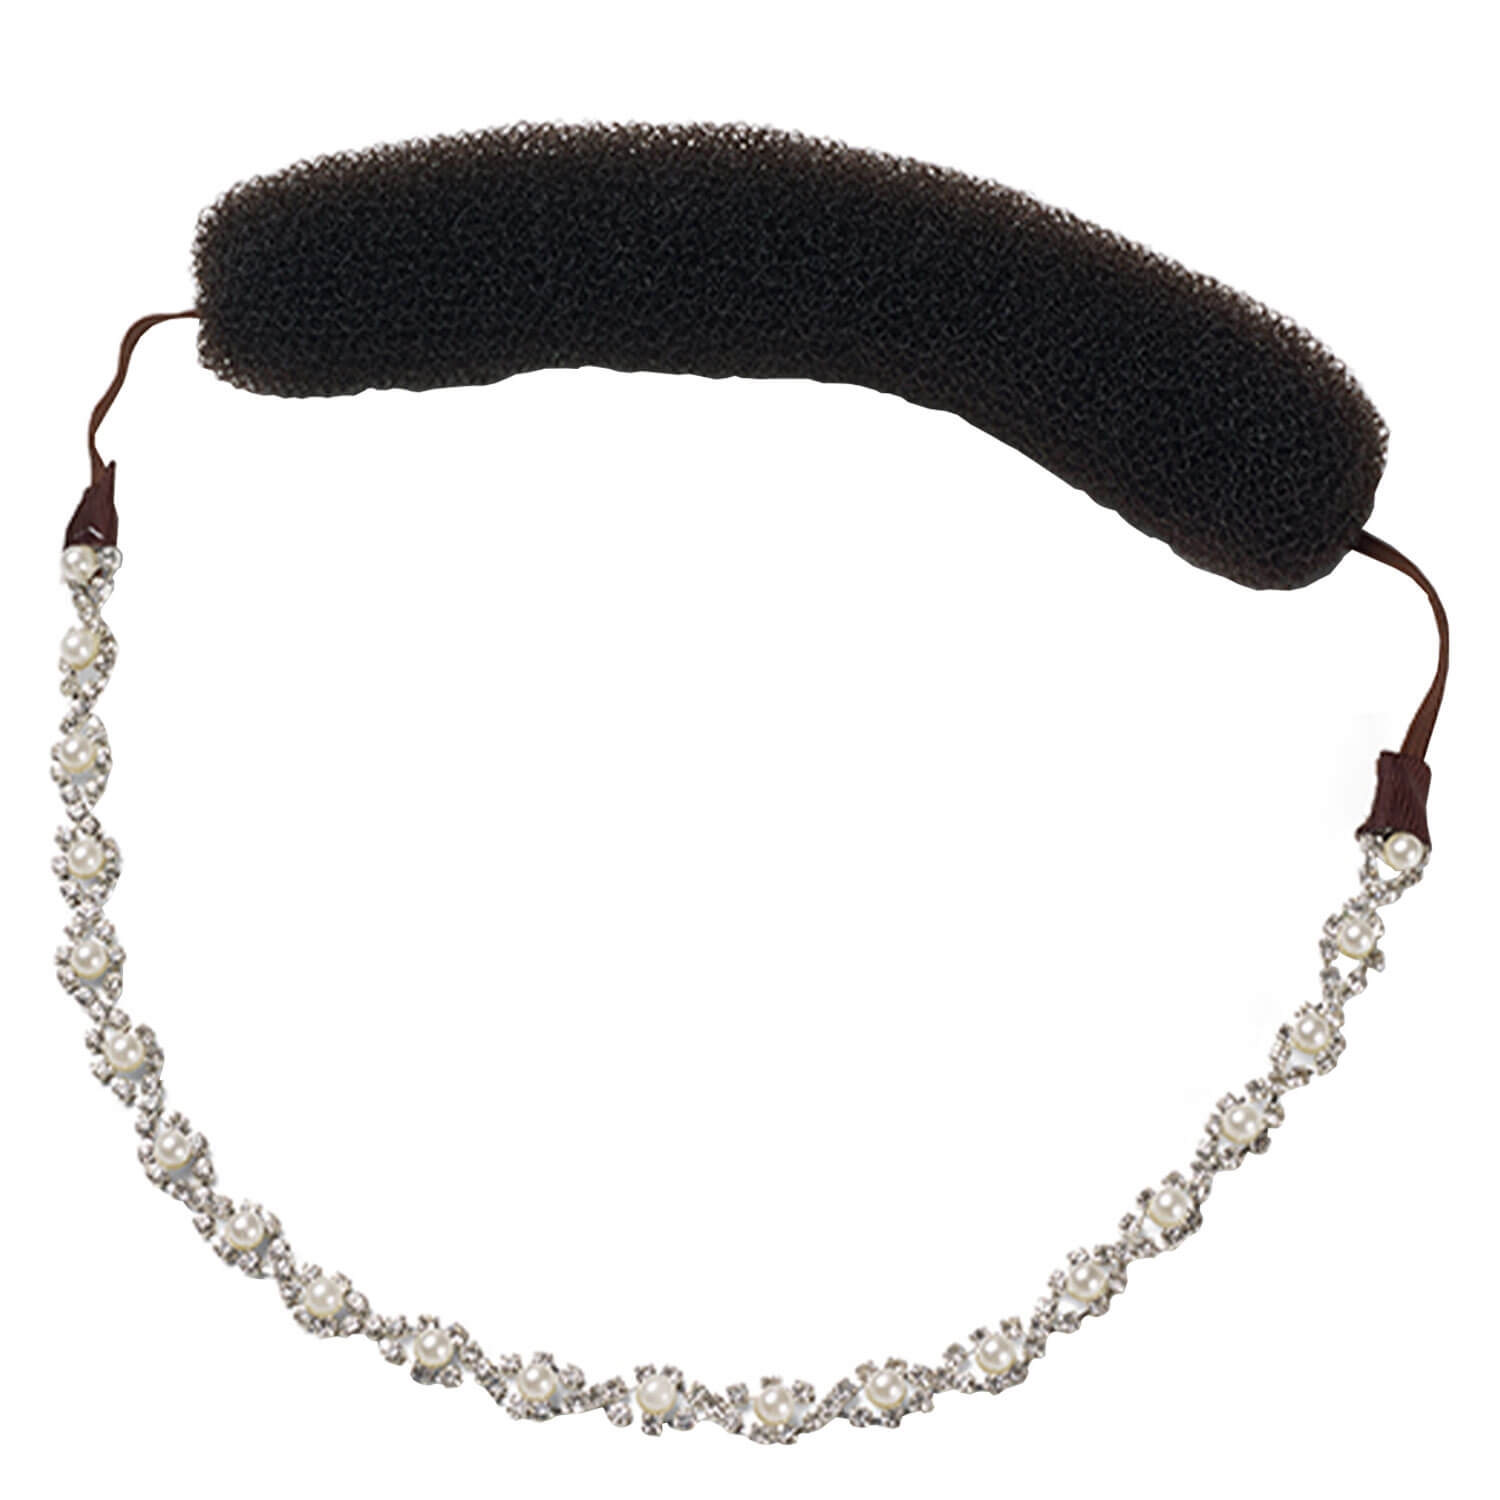 Produktbild von Celebride - Pretty Roll mit Perlen und Steinen